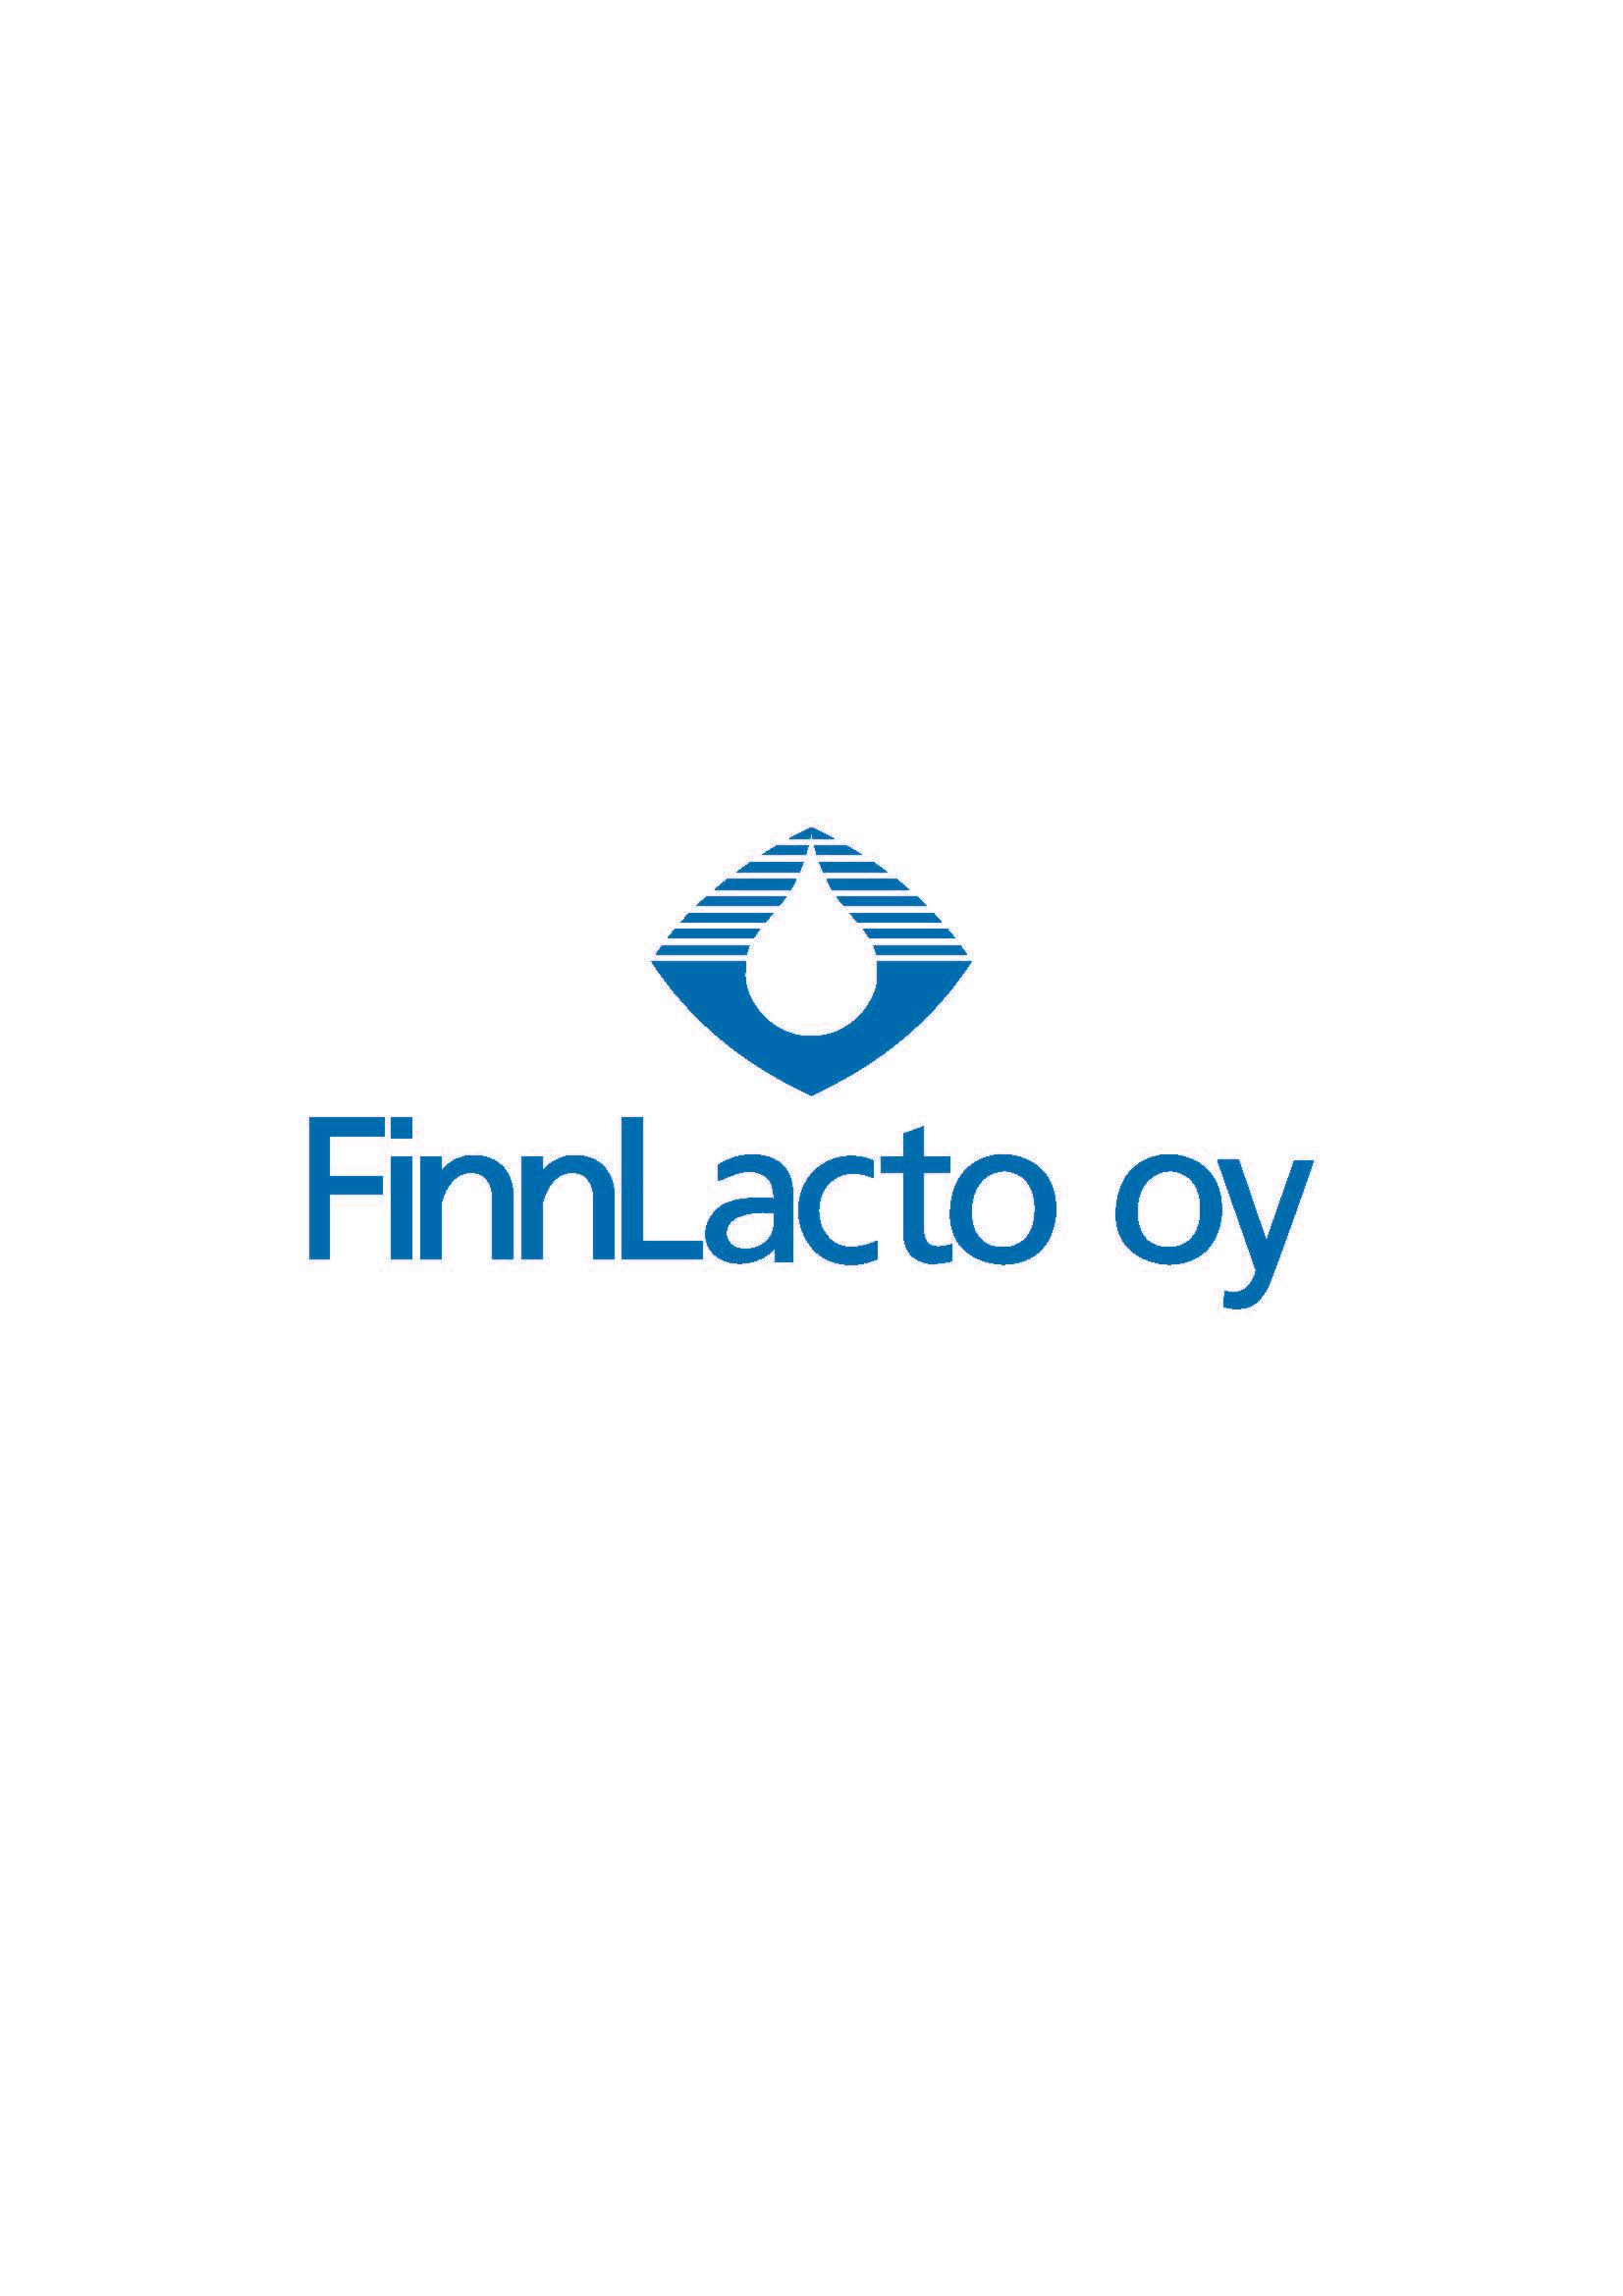 Faba utökar sin lantbruksförsörjningsverksamhet genom att köpa FinnLacto Oy:s hela aktiekapital och verksamhet